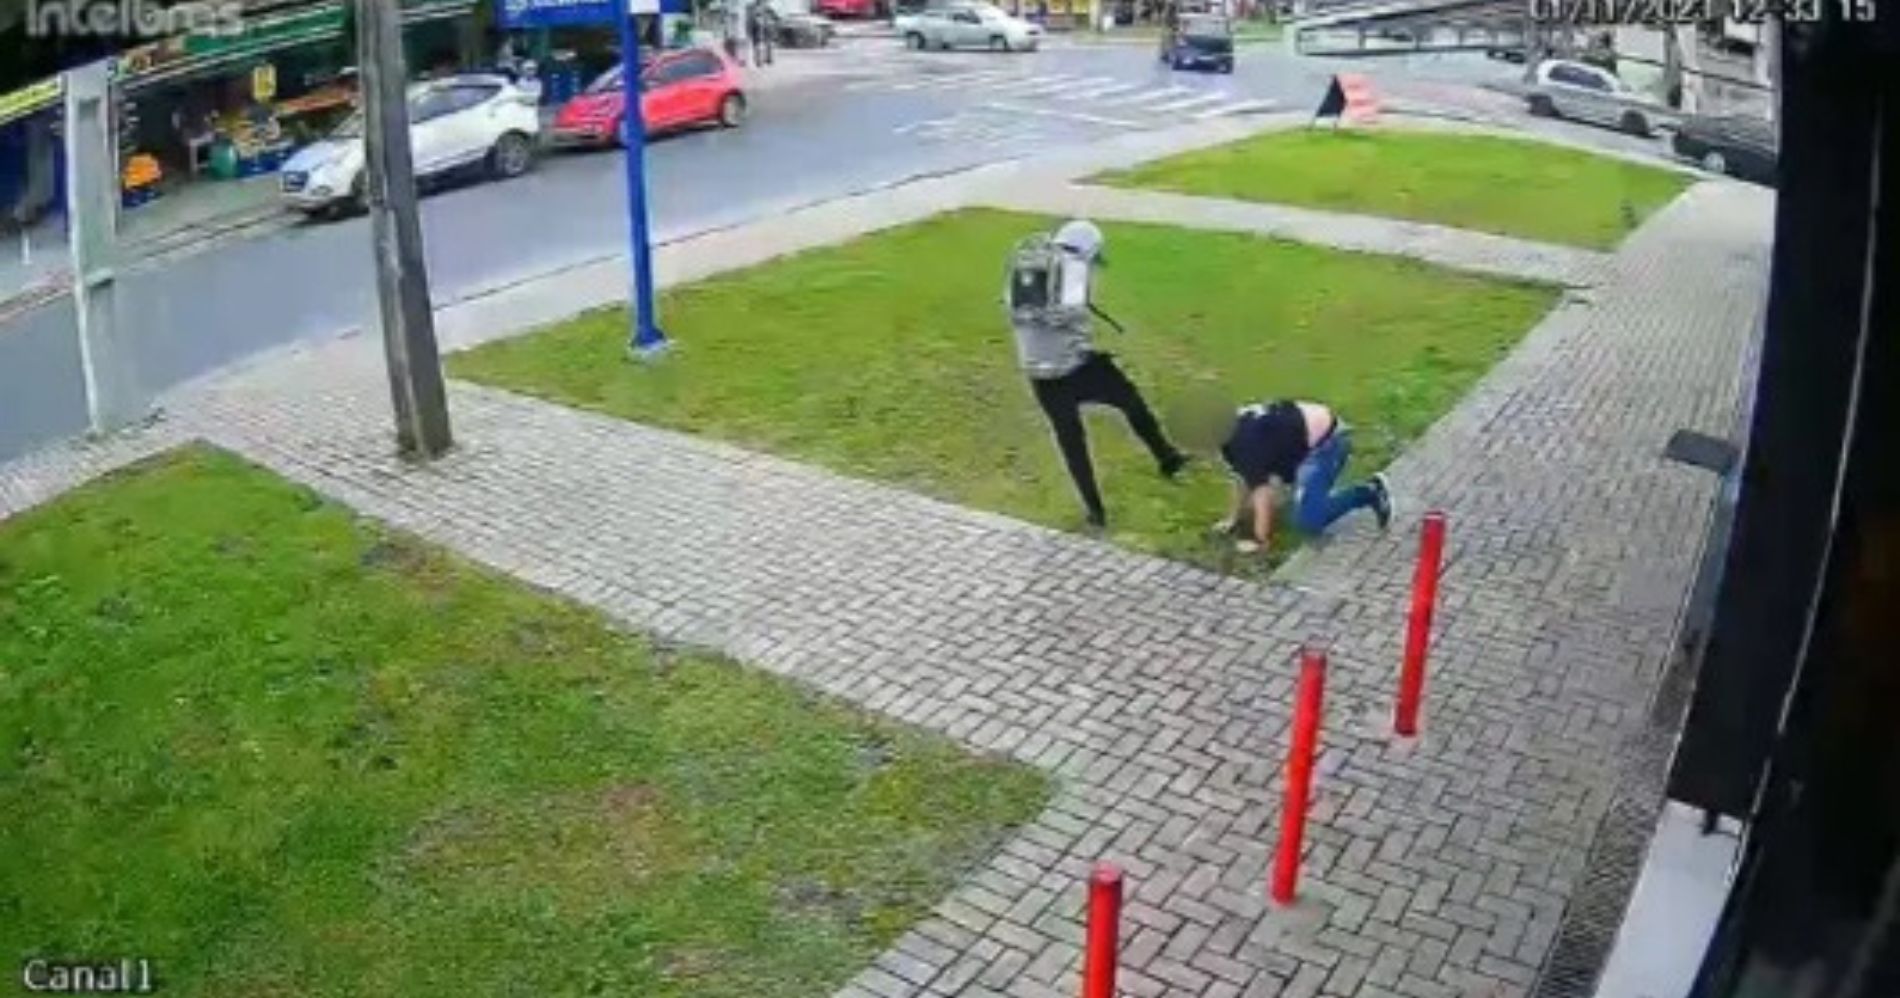 Suspeito chuta cabeça de comerciante, que desmaia, após assalto à loja de celulares no Jardim Paulista